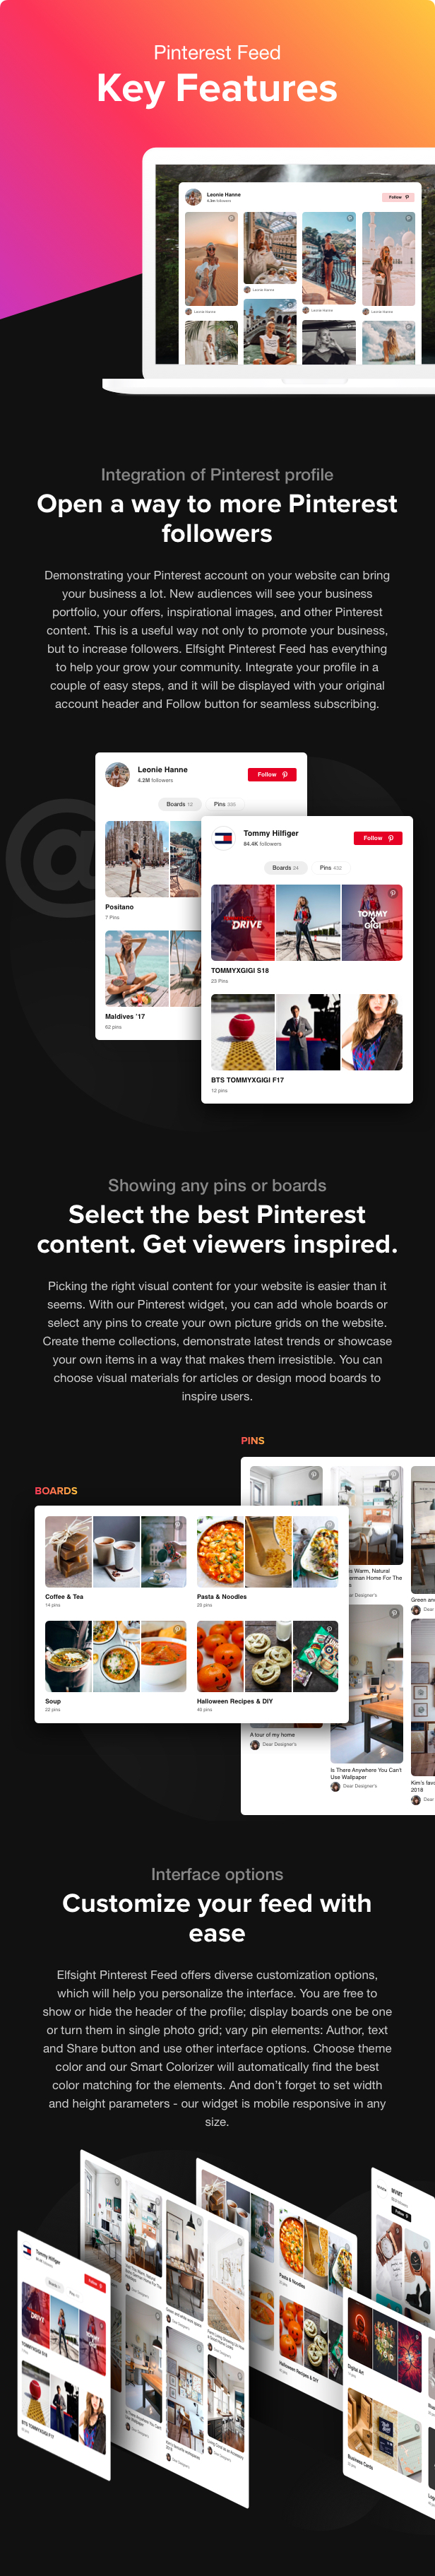 pinterest-feed-description-features.jpg